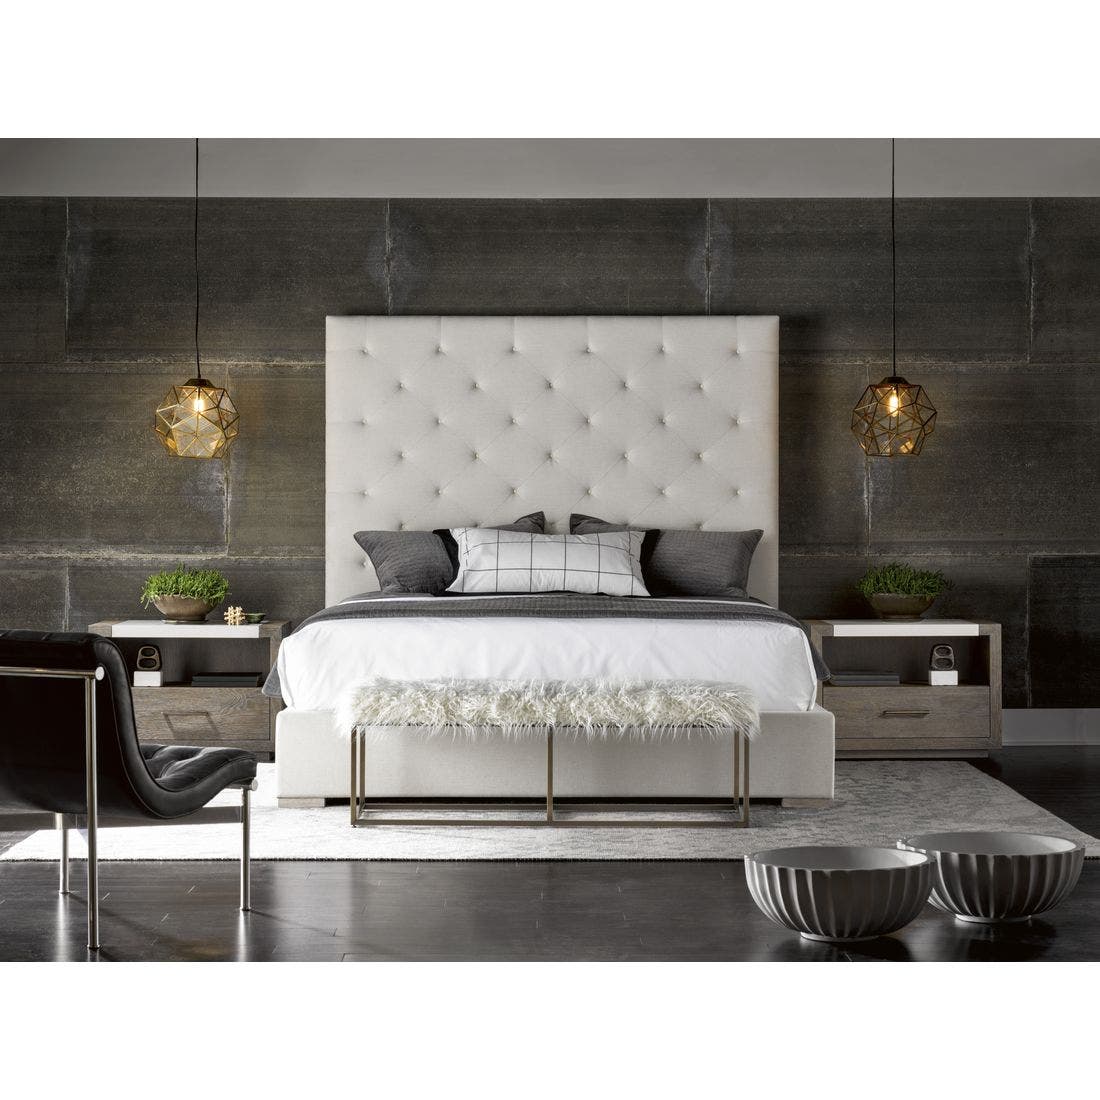 19134638-643220b-furniture-bedroom-furniture-beds-31